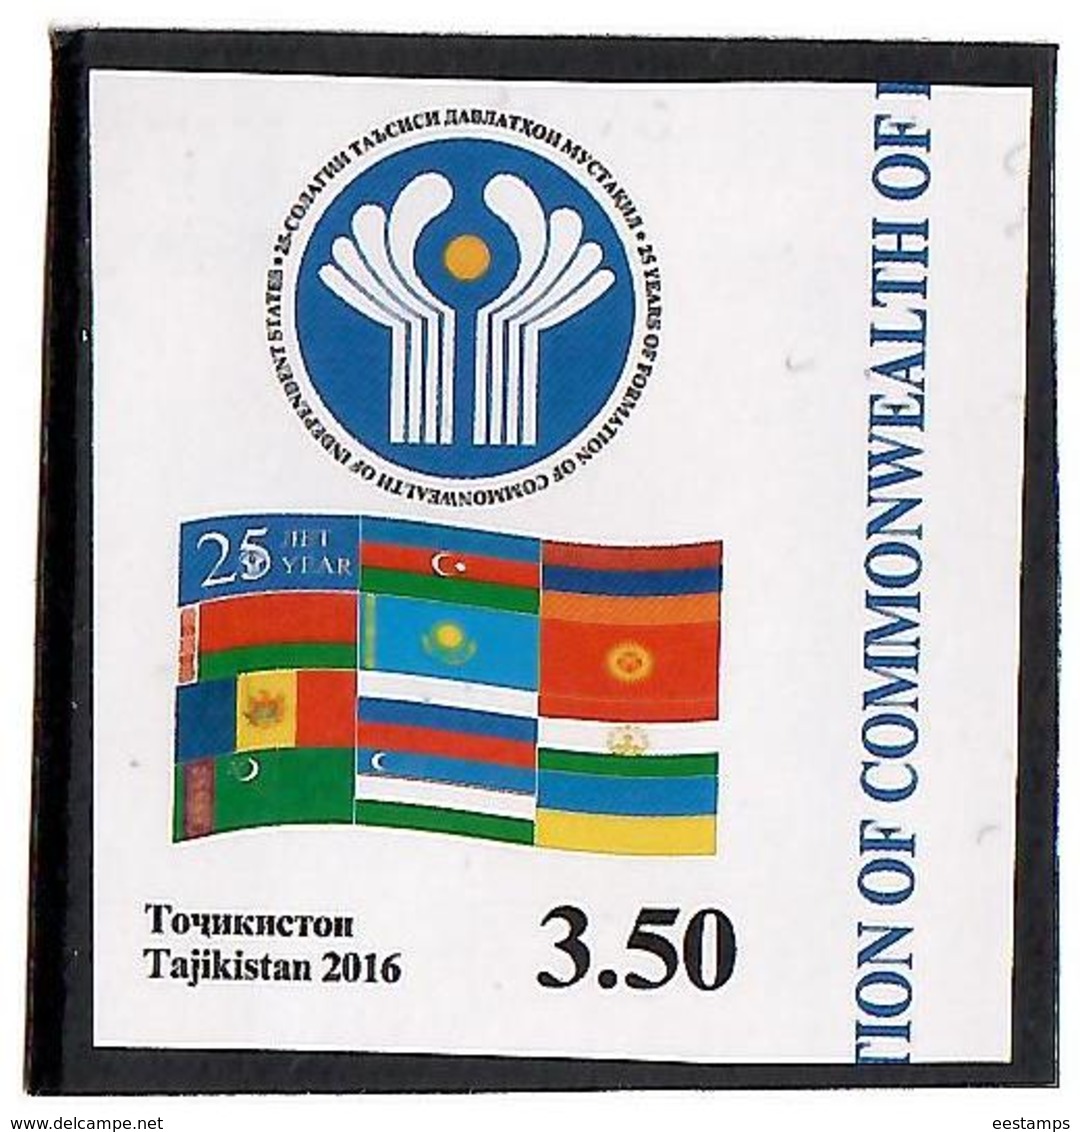 Tajikistan.2016 CIS - 25 Years(Flag).Imperf.1v: 3.50  Michel # 735b - Tadjikistan